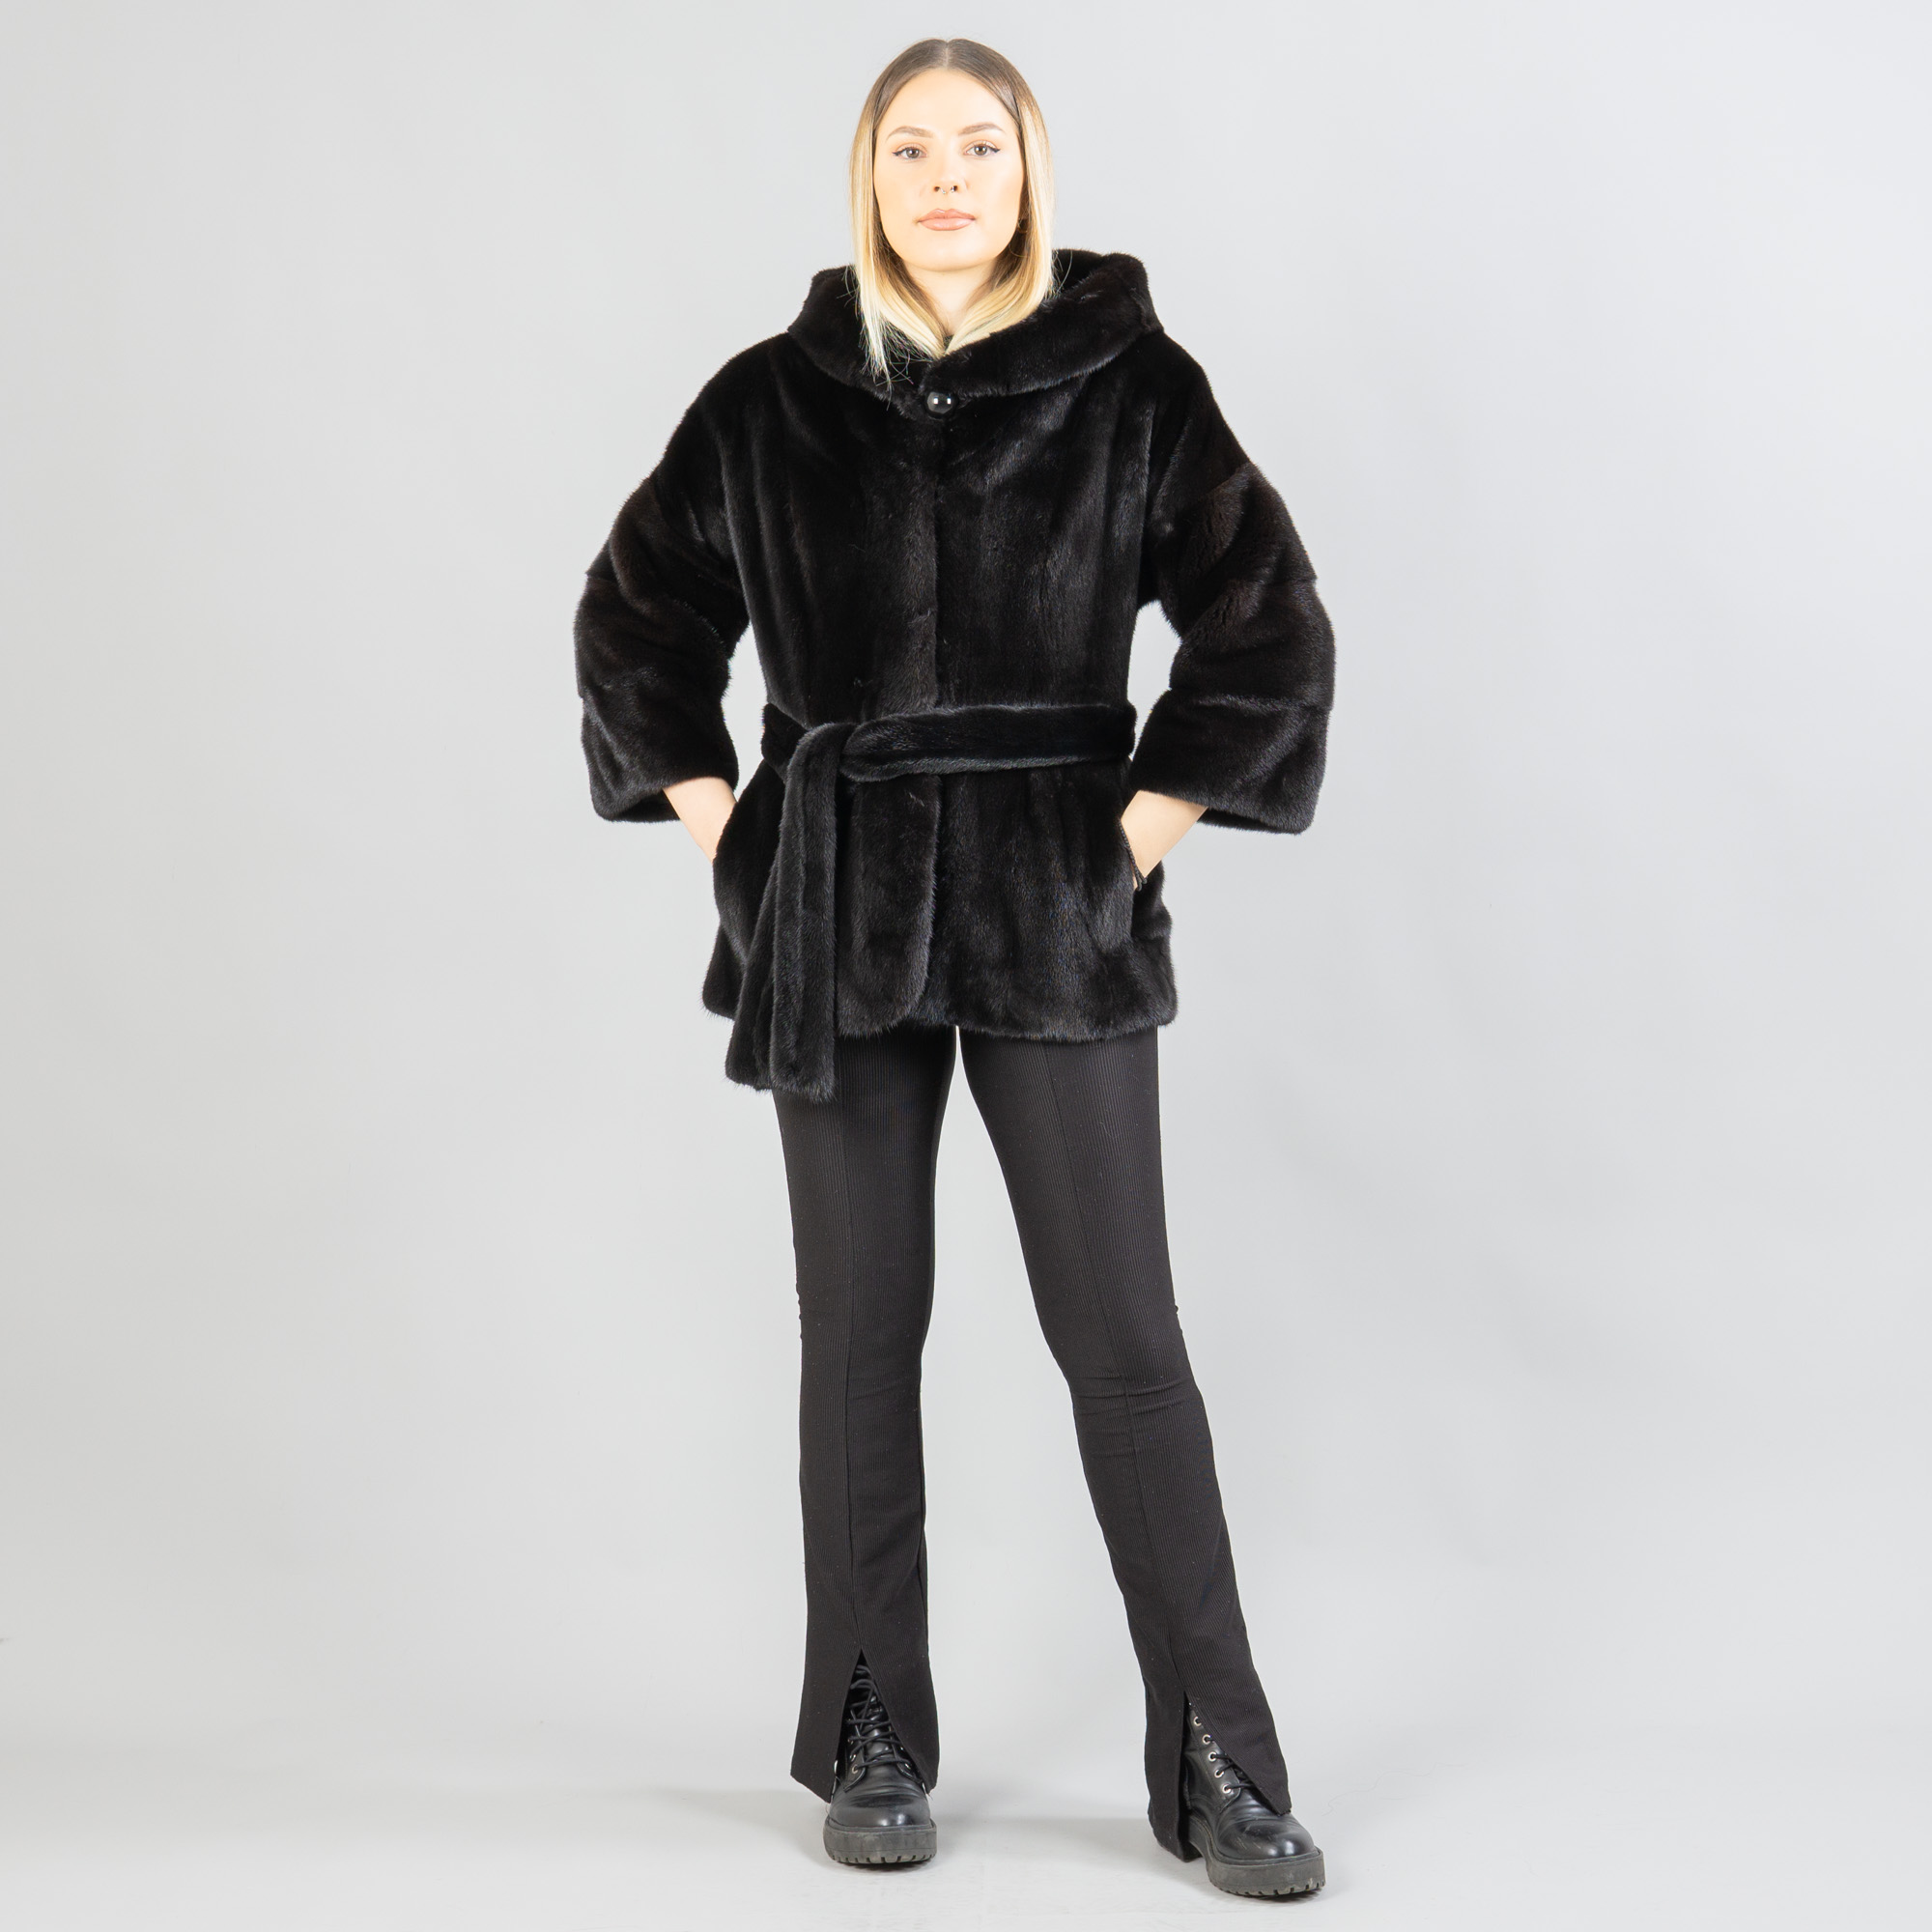 Black hooded mink fur jacket with a belt